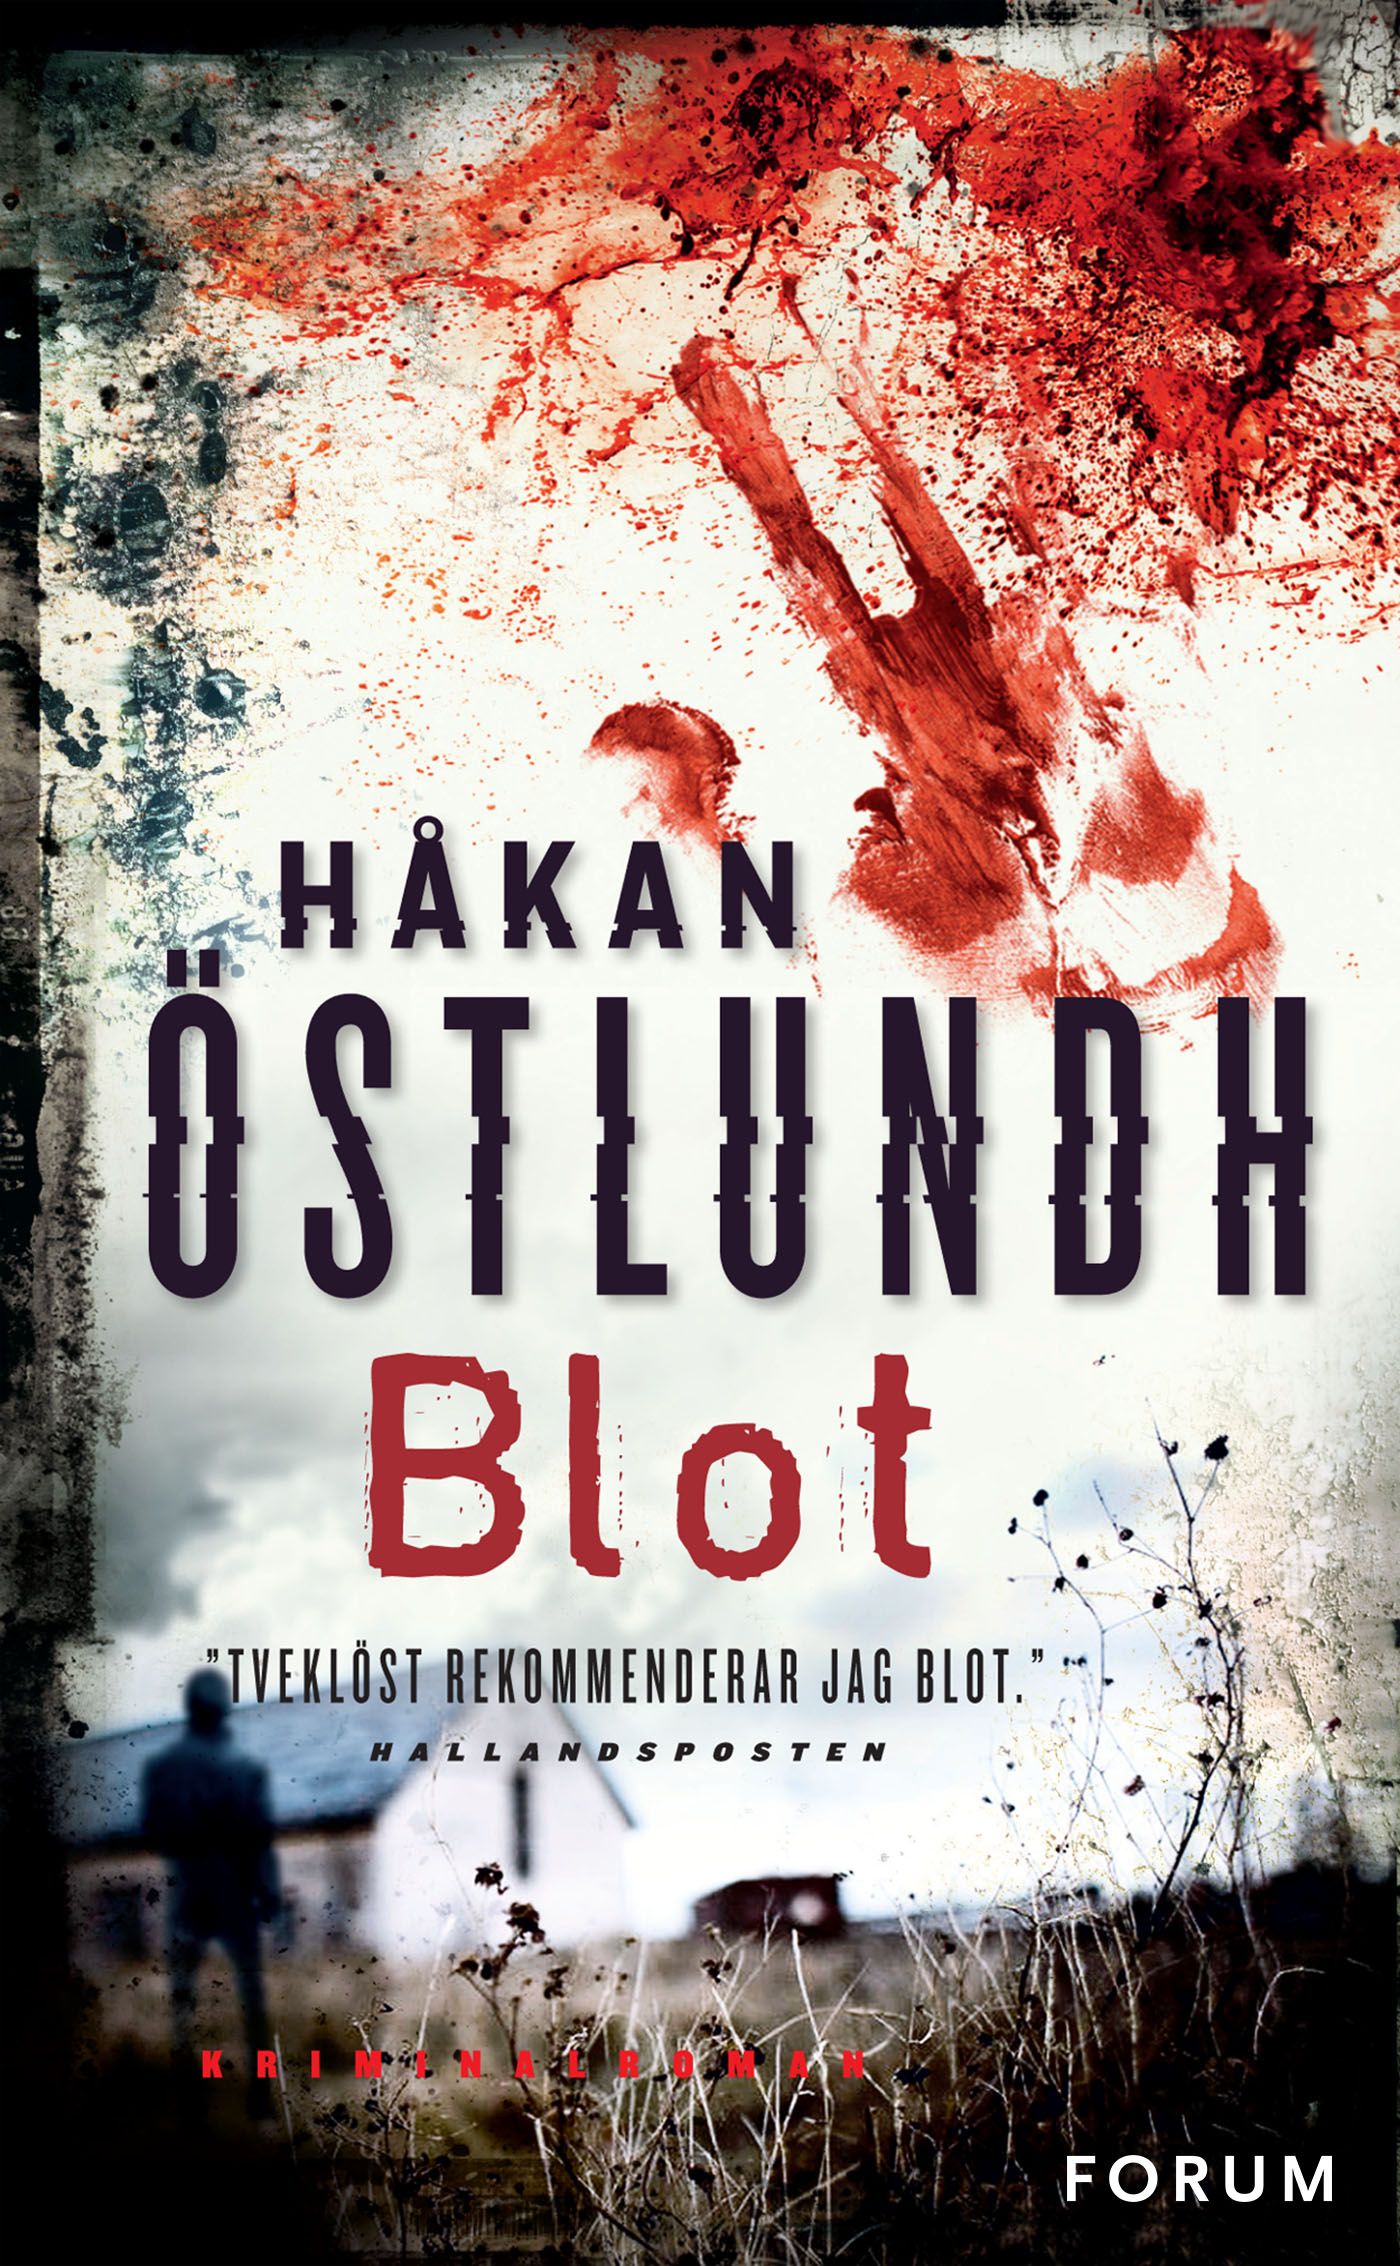 Blot, e-bog af Håkan Östlundh